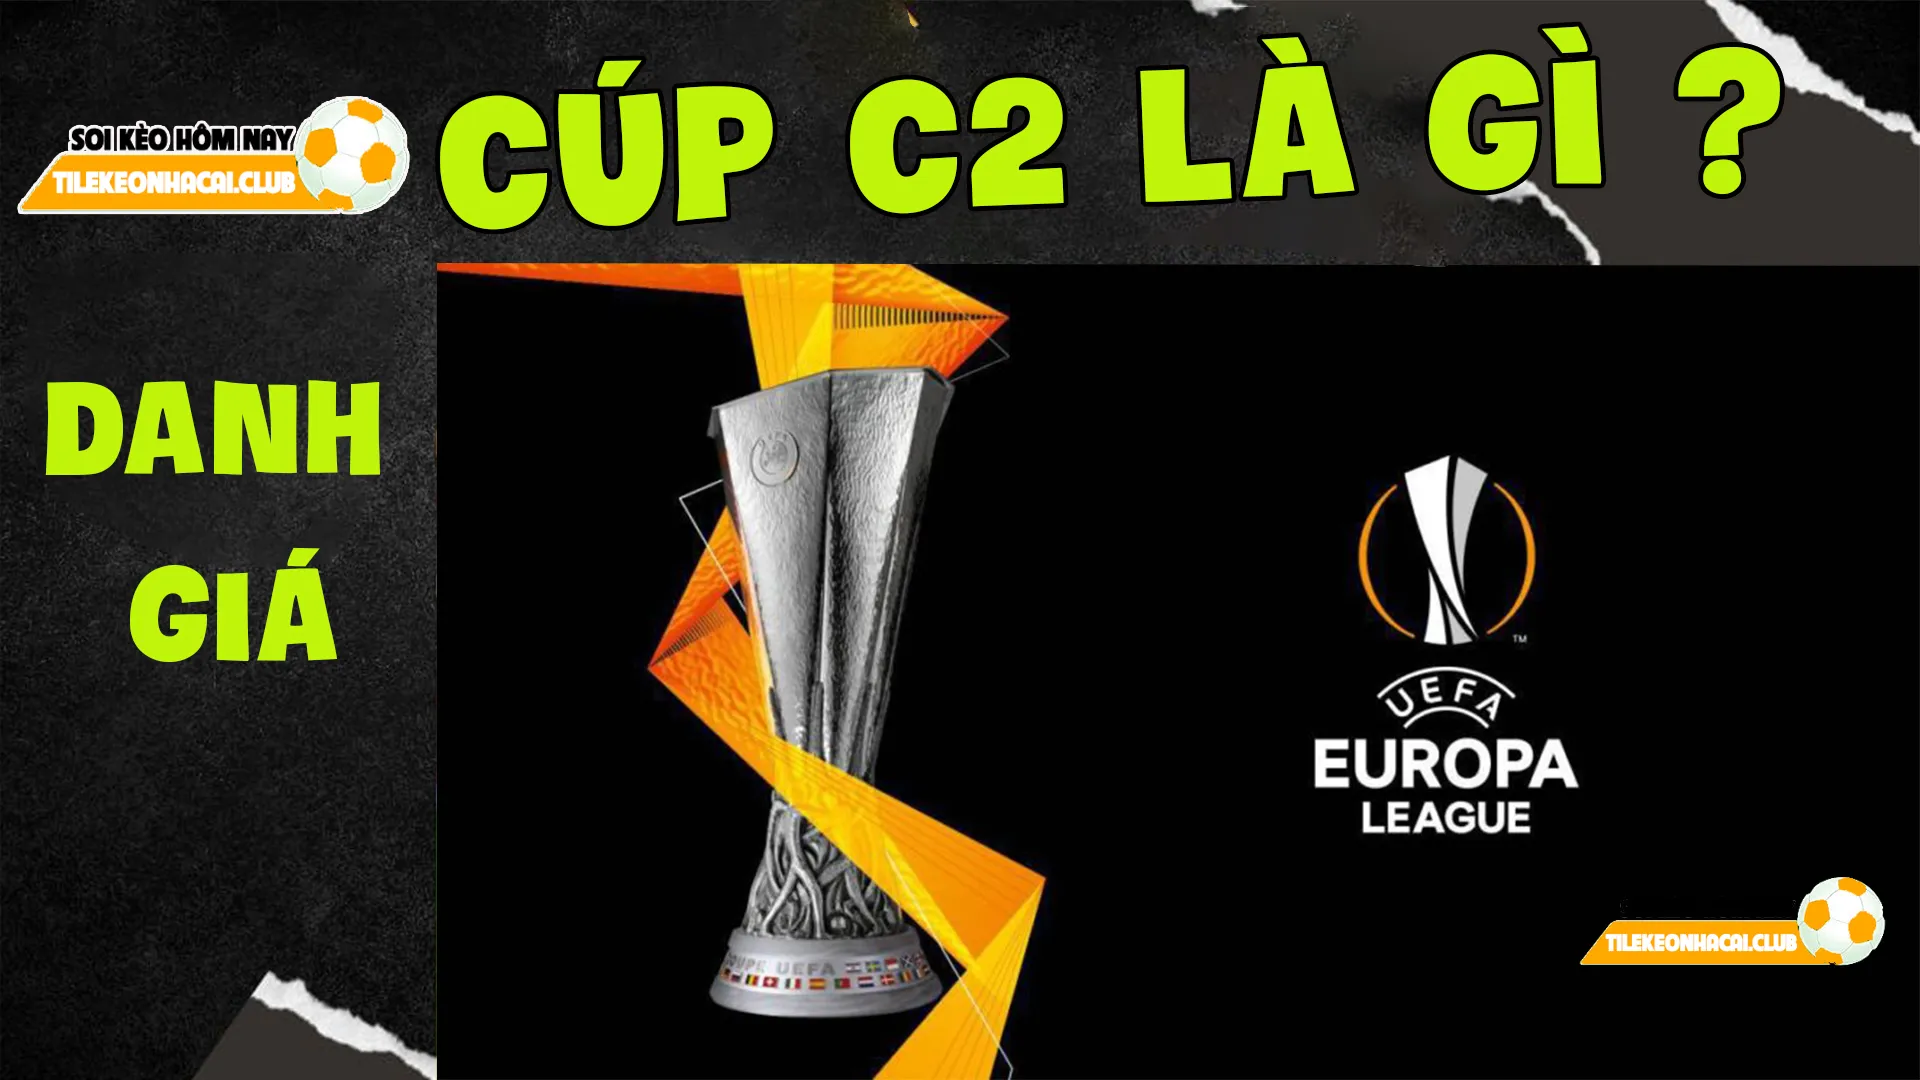 Cúp C2 là gì? Những điều cần biết về giải đấu UEFA Europa League